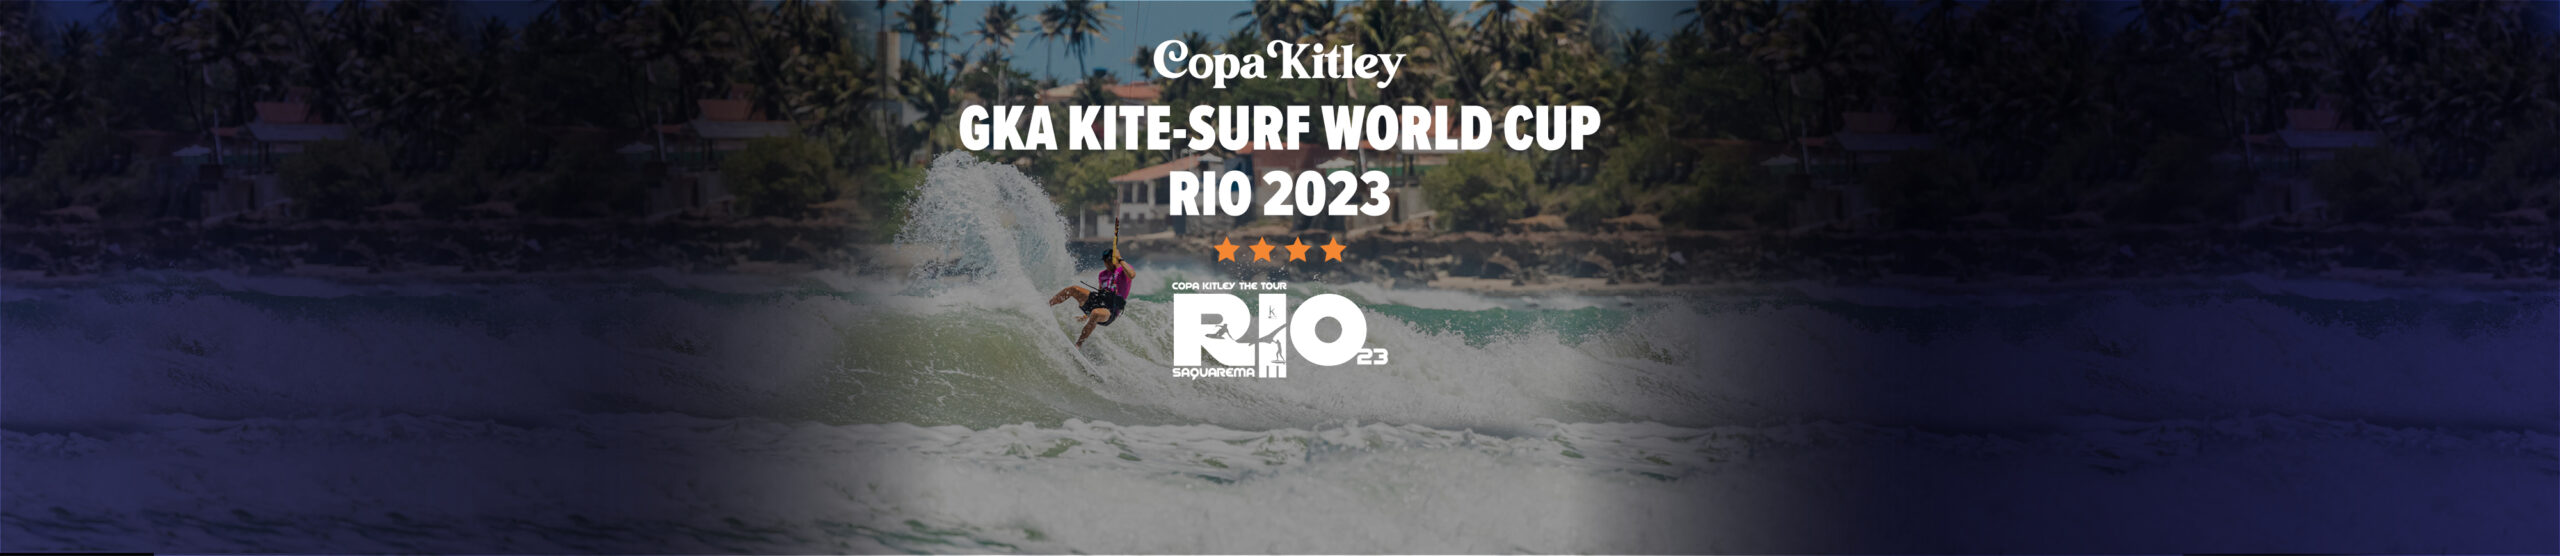 Image for GKA Kite-Surf World Cup Brazil 2023